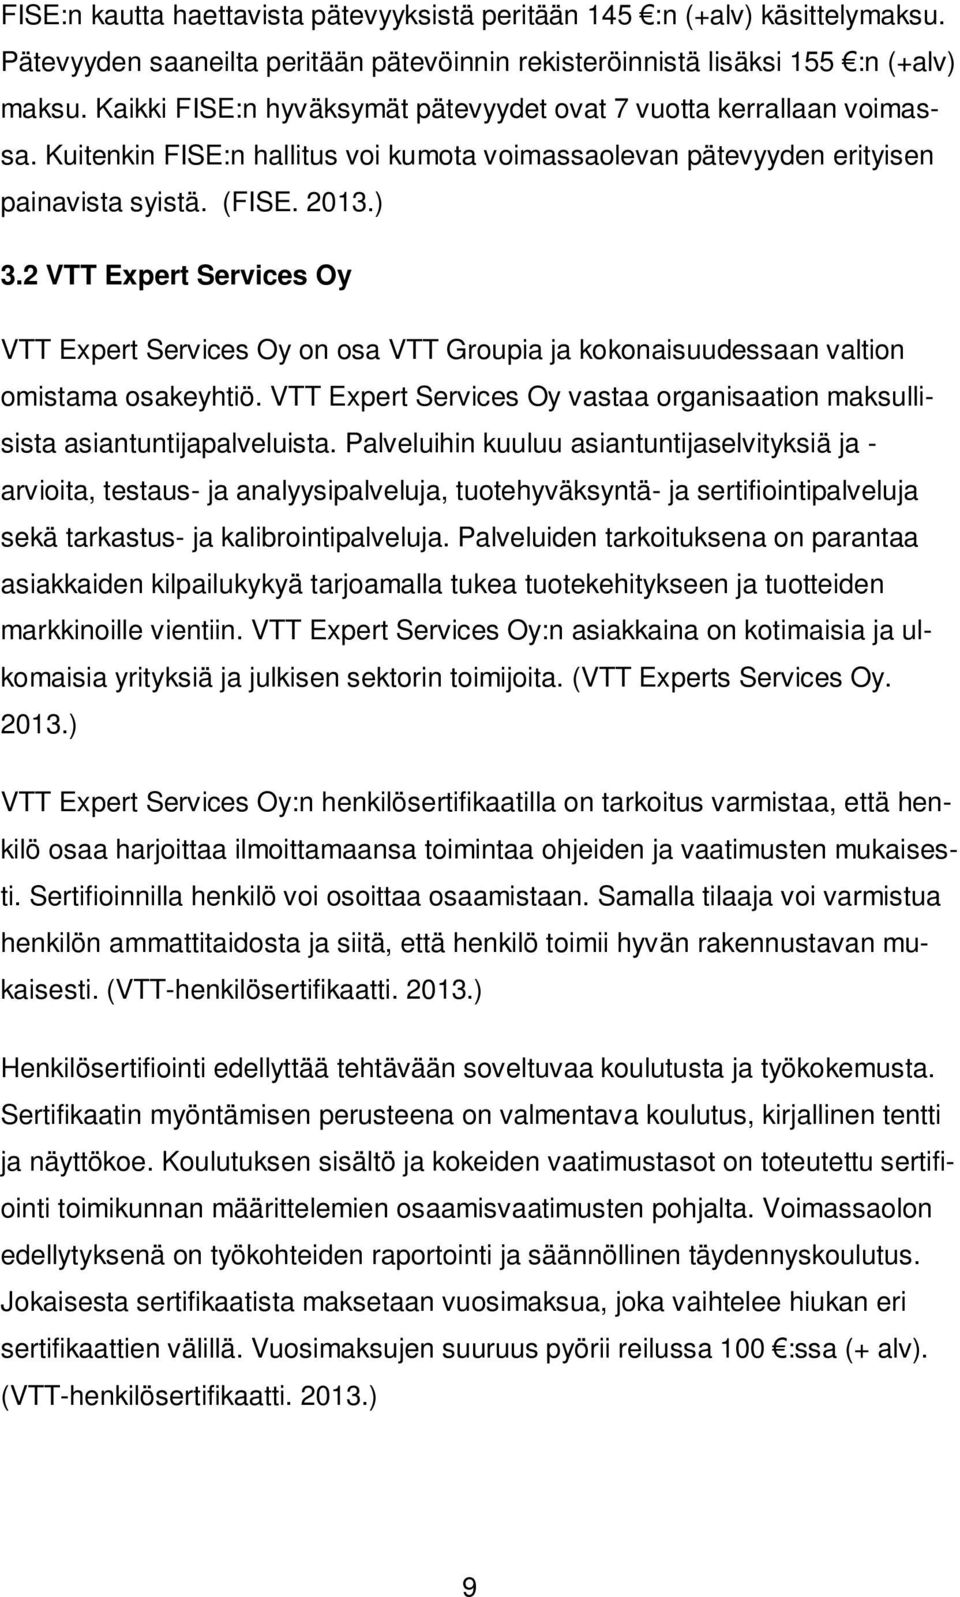 2 VTT Expert Services Oy VTT Expert Services Oy on osa VTT Groupia ja kokonaisuudessaan valtion omistama osakeyhtiö. VTT Expert Services Oy vastaa organisaation maksullisista asiantuntijapalveluista.